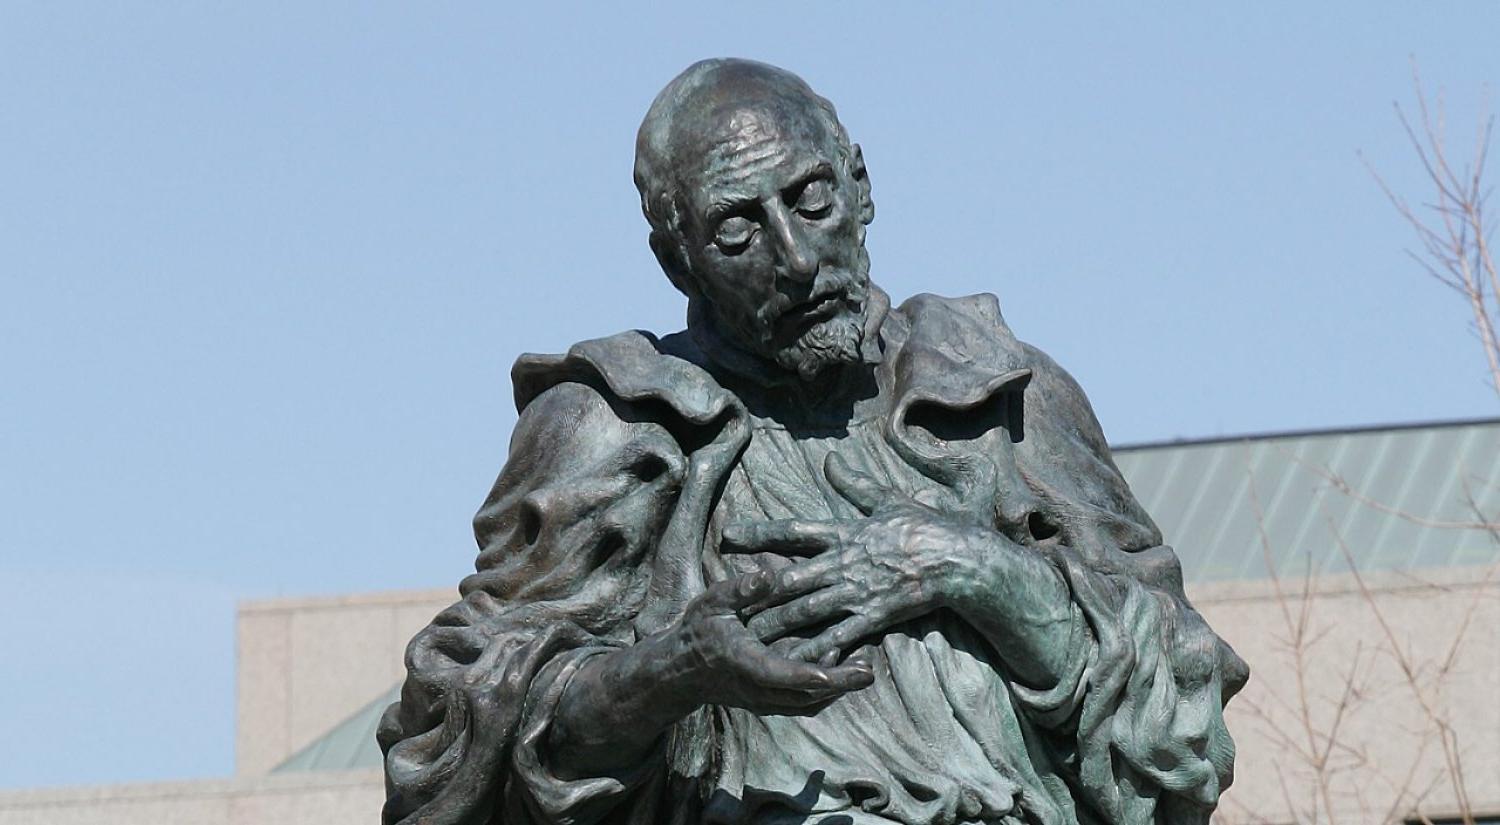 BC's St. Ignatius statue